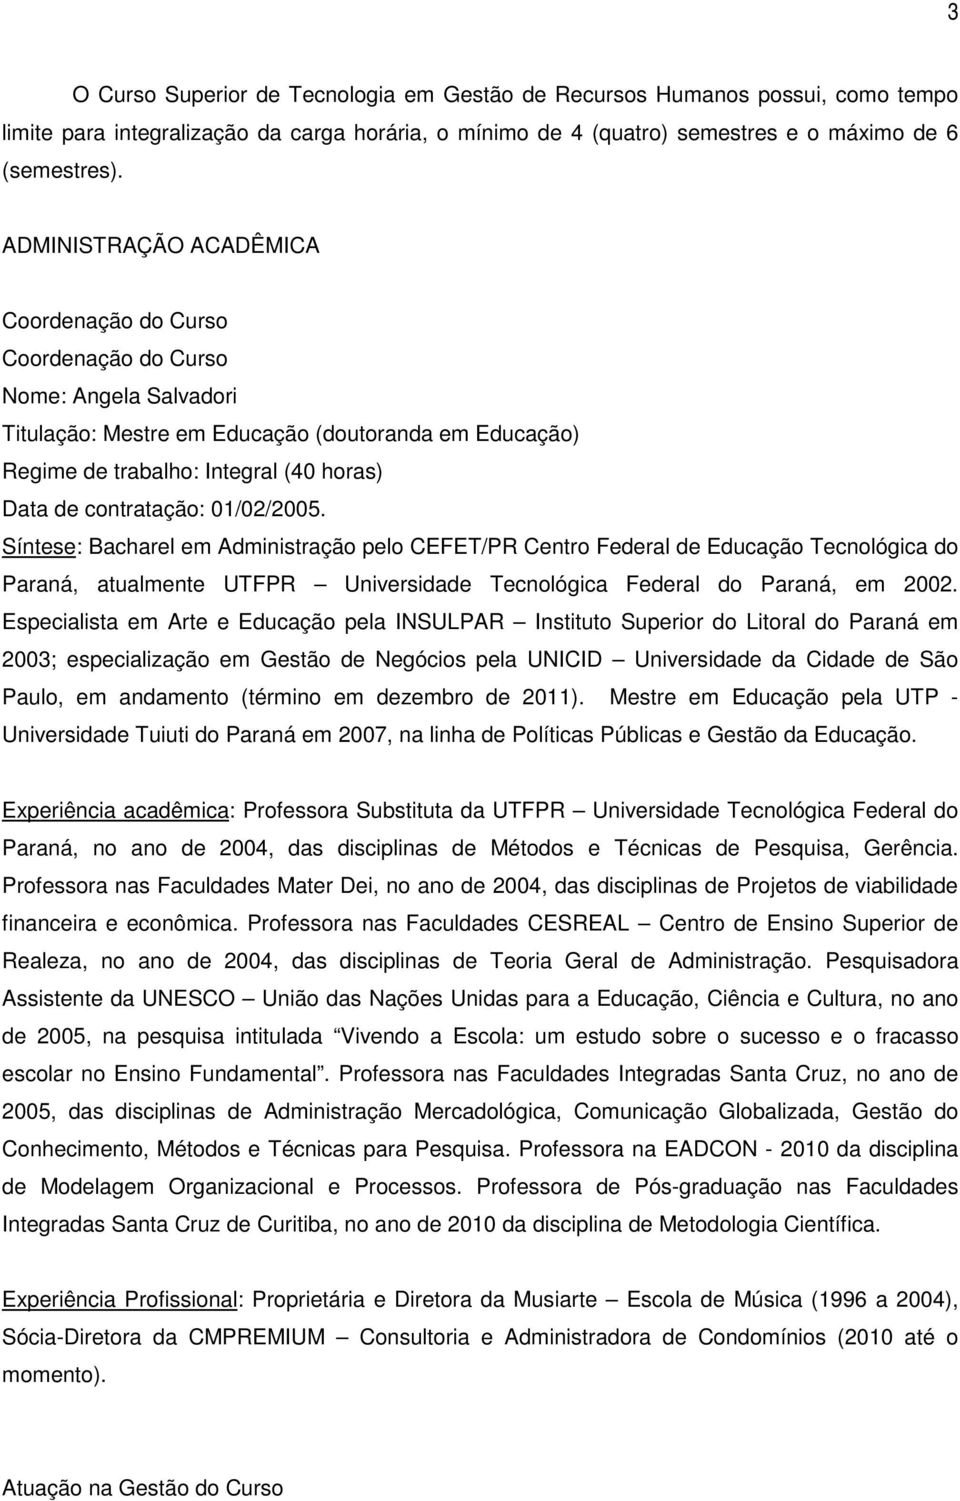 contratação: 01/02/2005. Síntese: Bacharel em Administração pelo CEFET/PR Centro Federal de Educação Tecnológica do Paraná, atualmente UTFPR Universidade Tecnológica Federal do Paraná, em 2002.